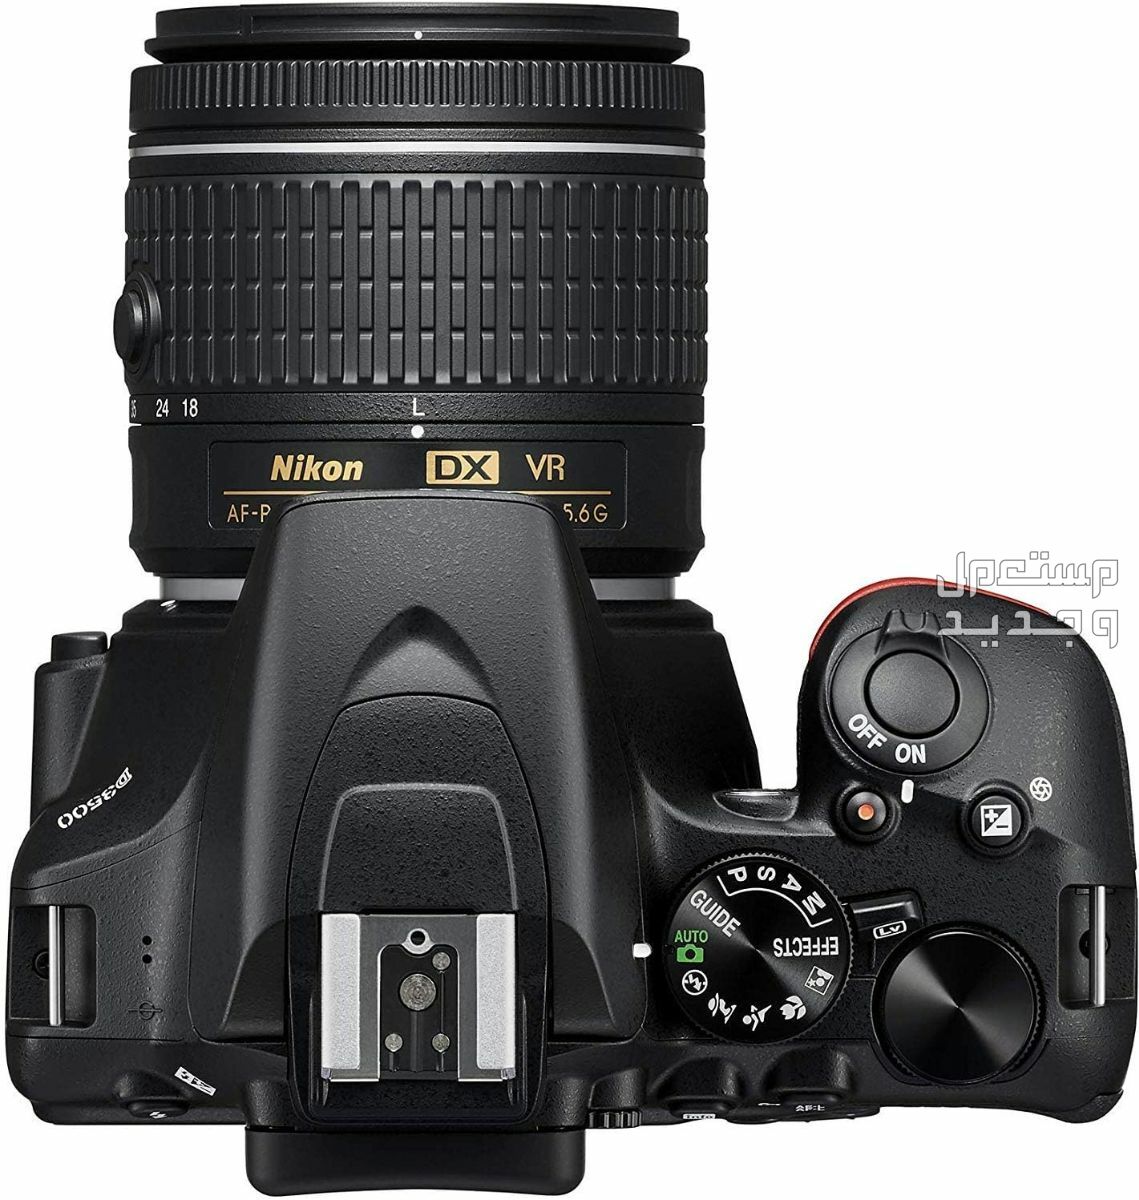 10 كاميرات تصوير ماركات عالمية بأسعار رخيصة في السودان سعر كاميرا Nikon D3500